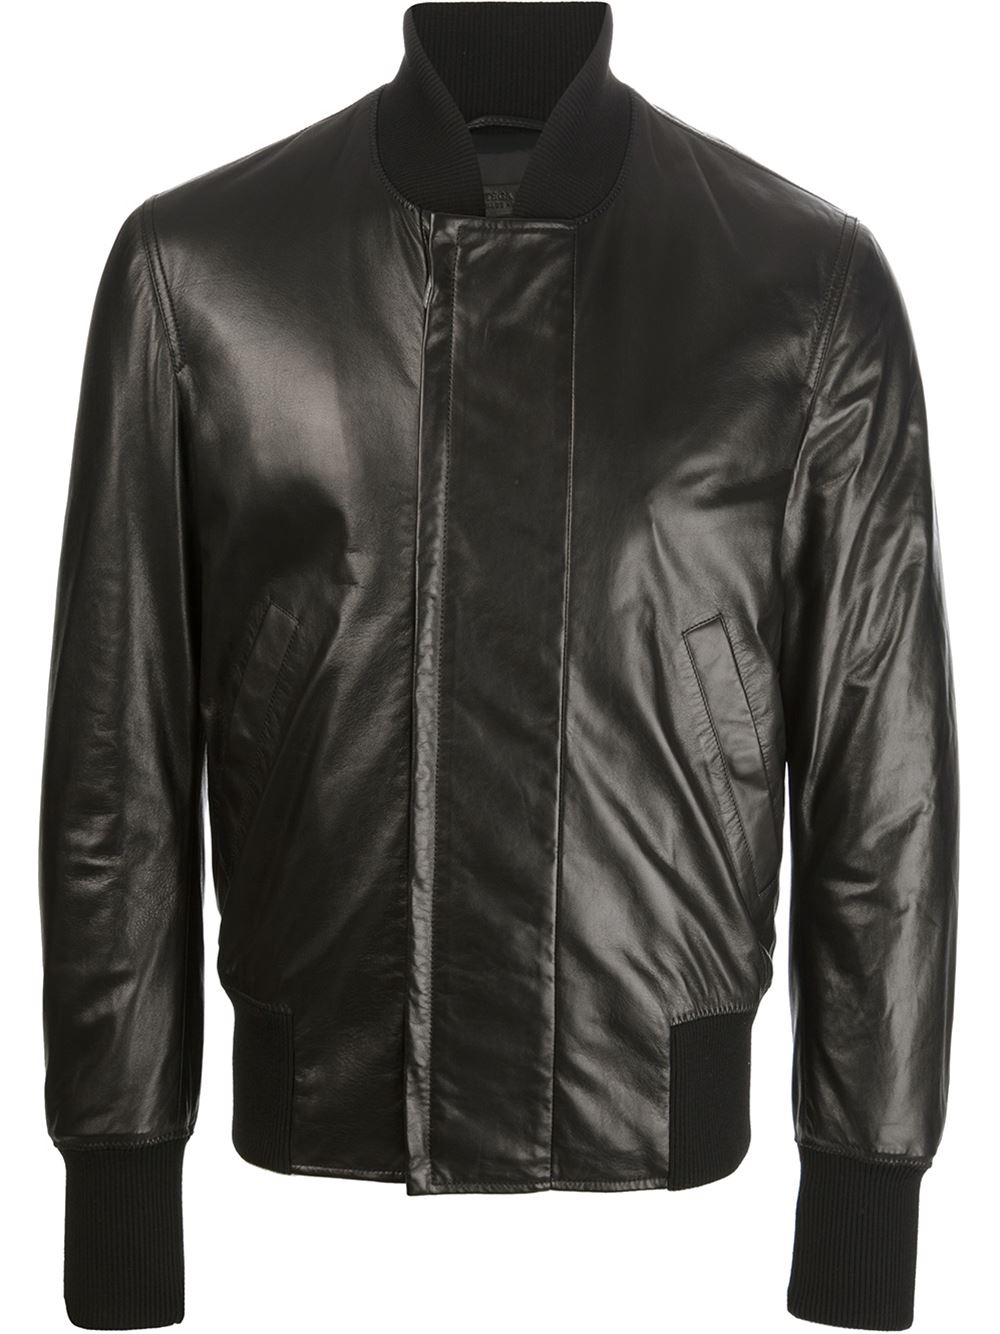 Bottega Veneta Leather Jacket in Black for Men - Lyst